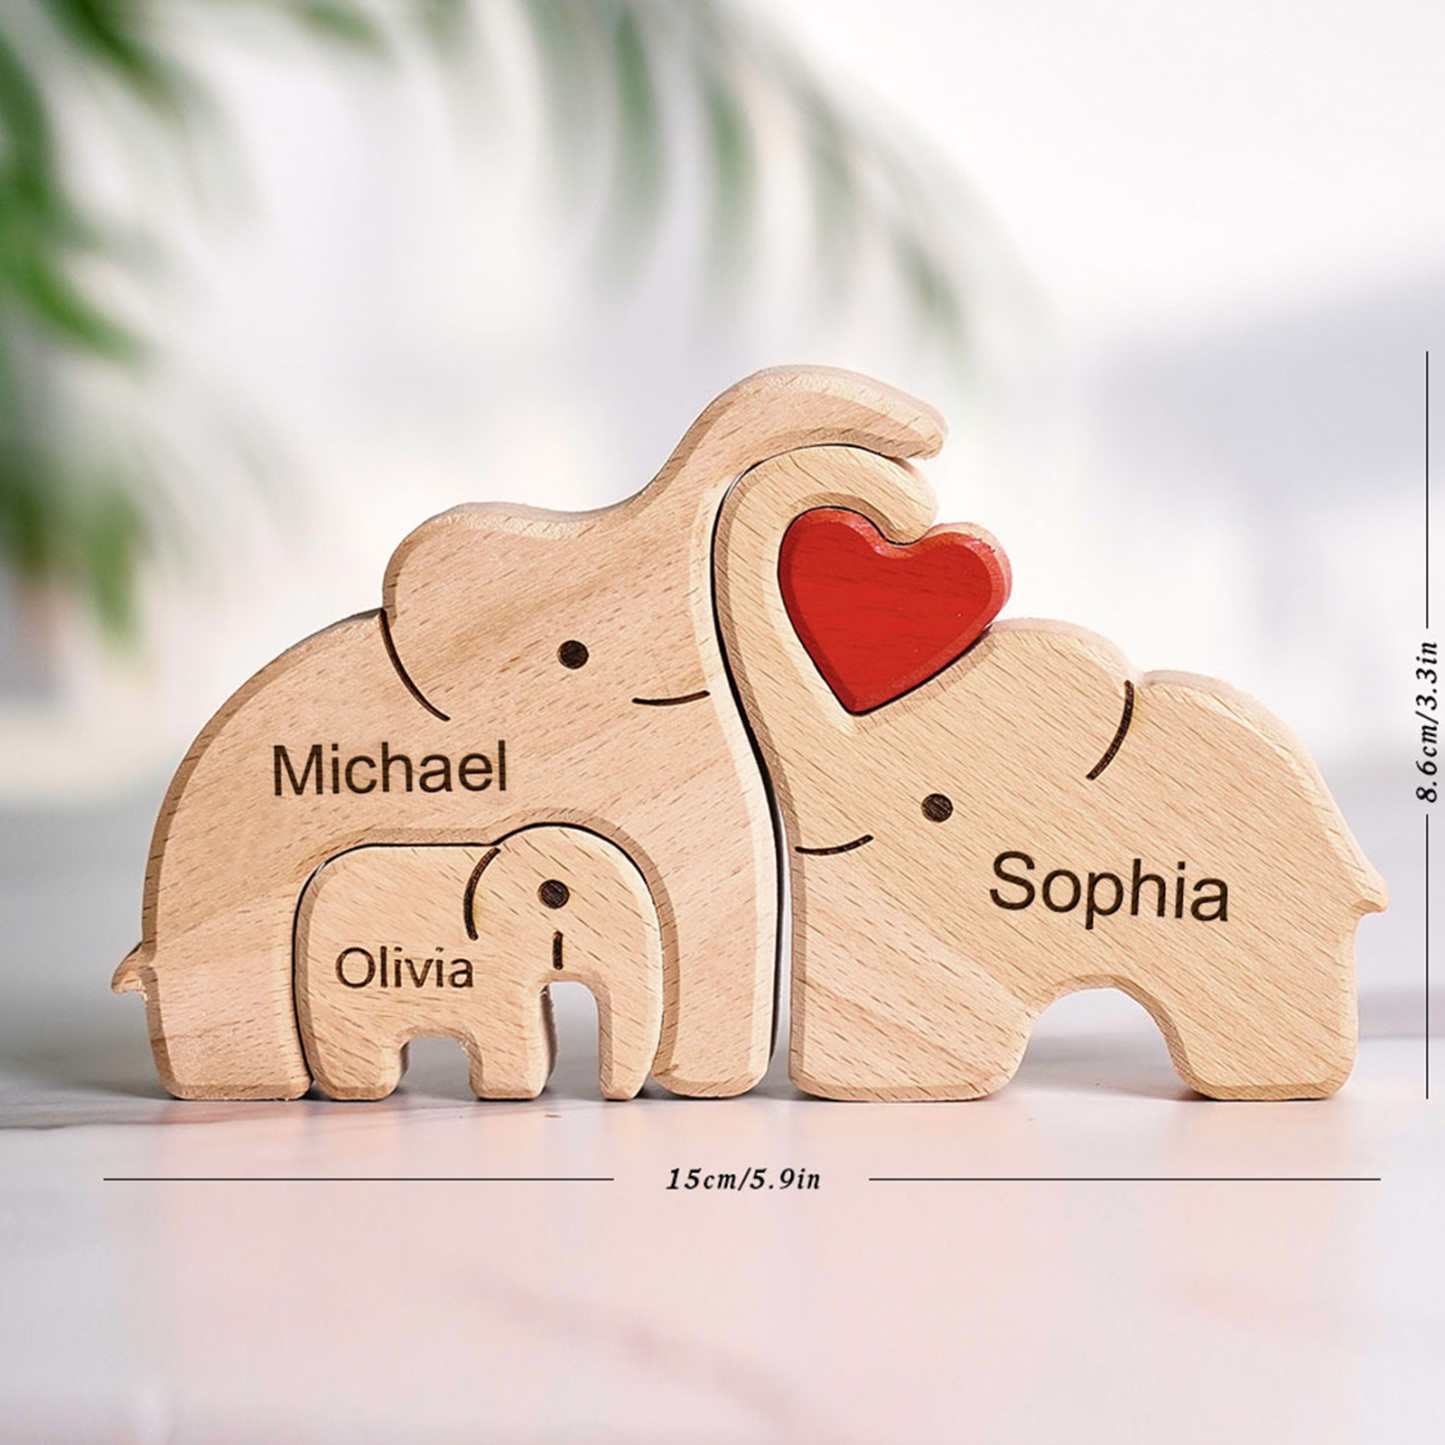 Rompecabezas de elefante familiar de madera de Navidad personalizado, regalo con nombres personalizados, decoración del hogar, regalos de calentamiento de la casa